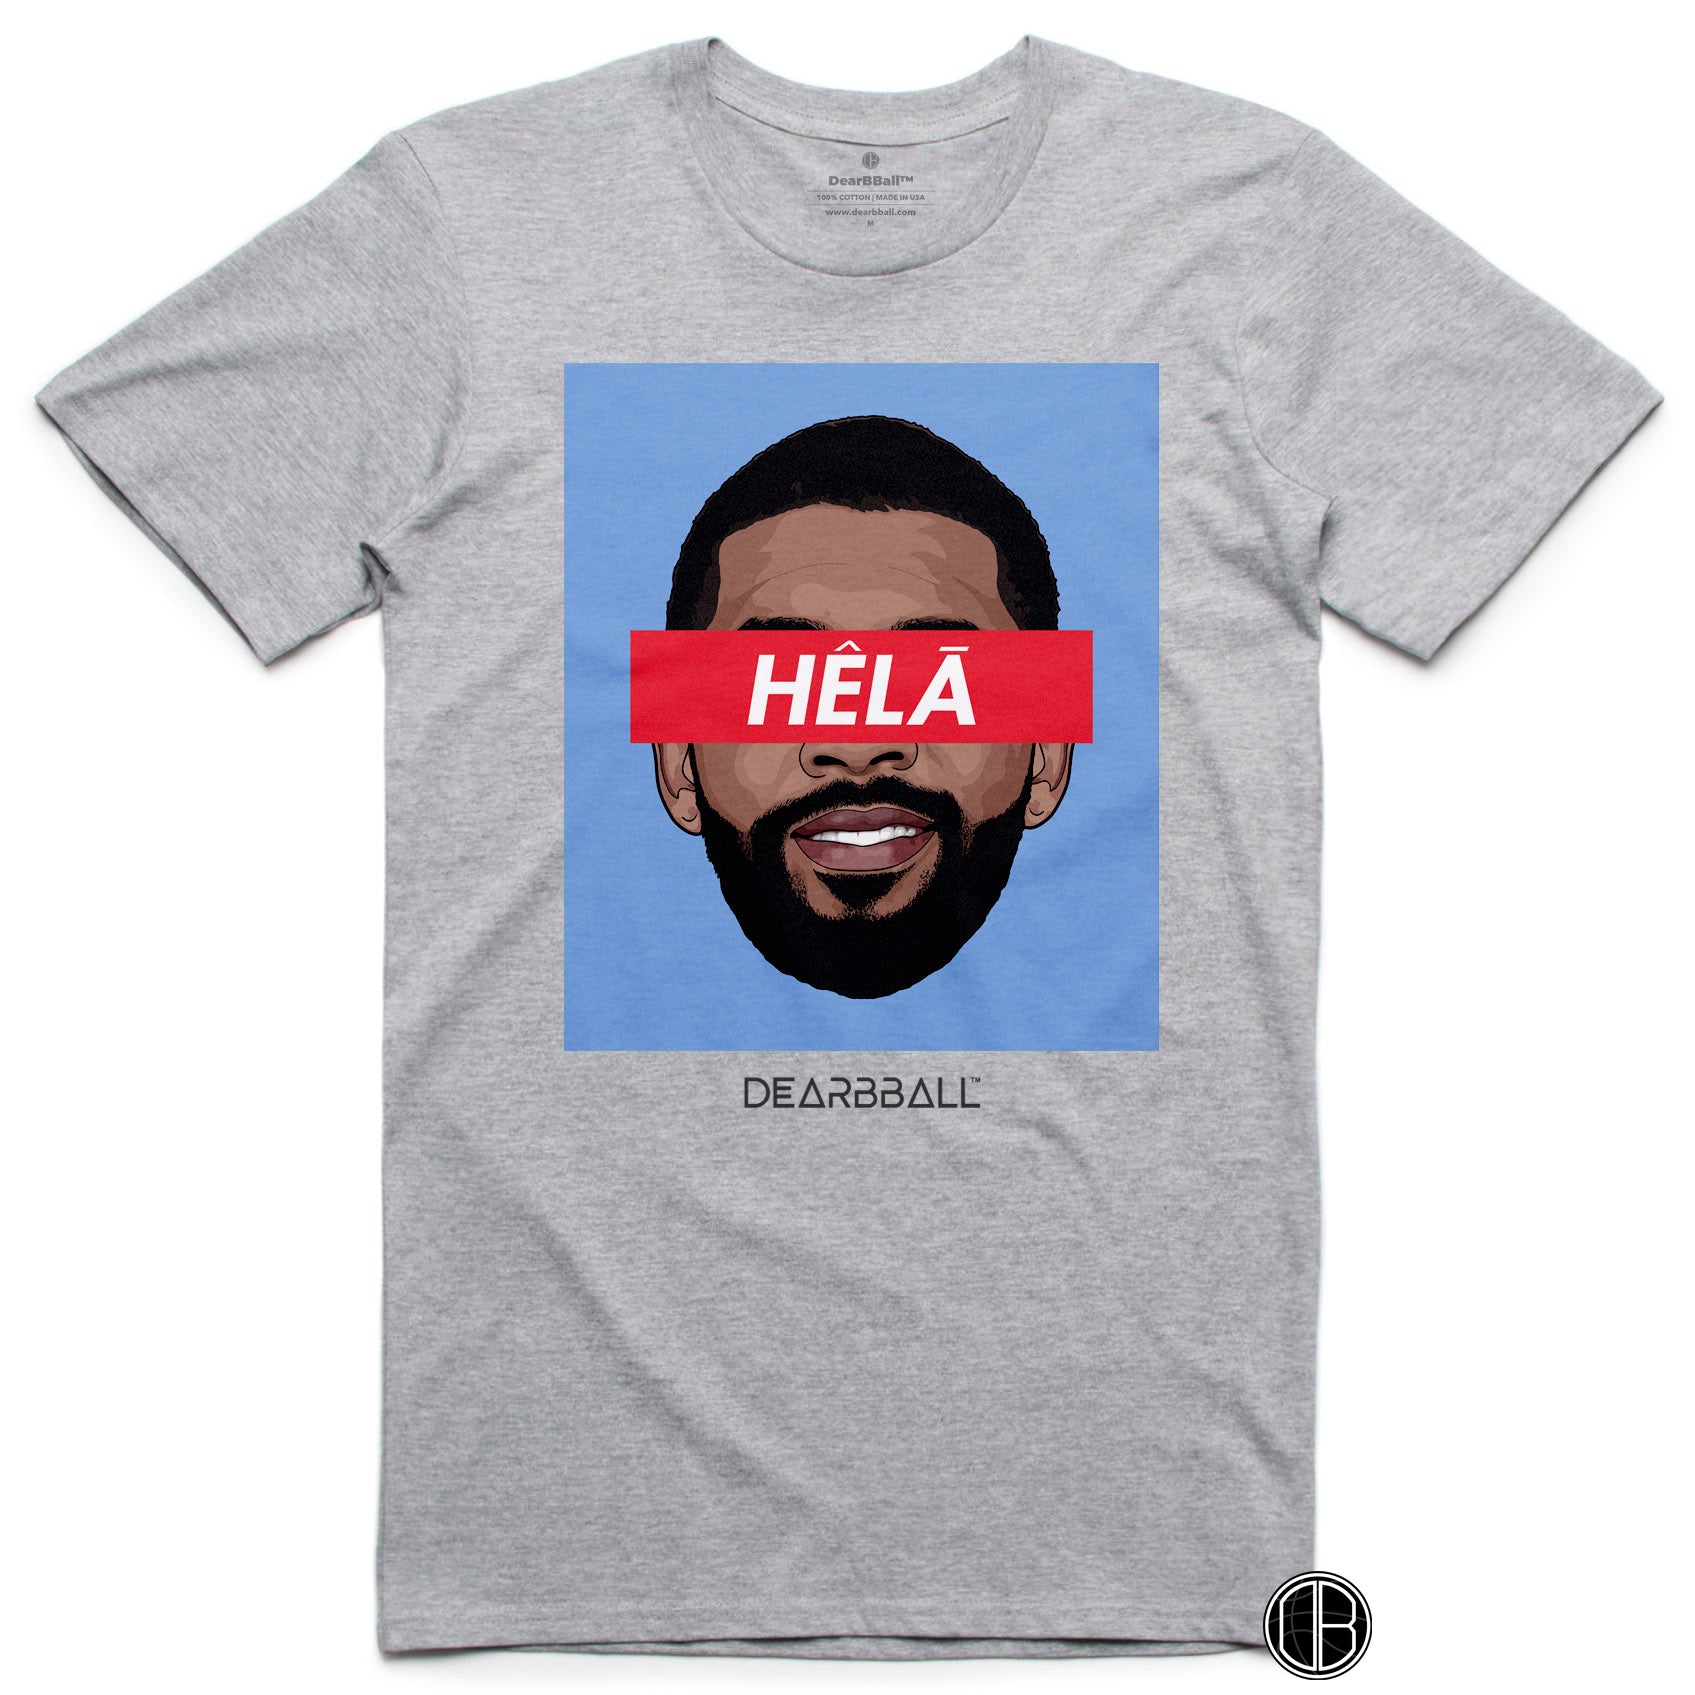 DearBBall T-Shirt - HELA Blue Edition